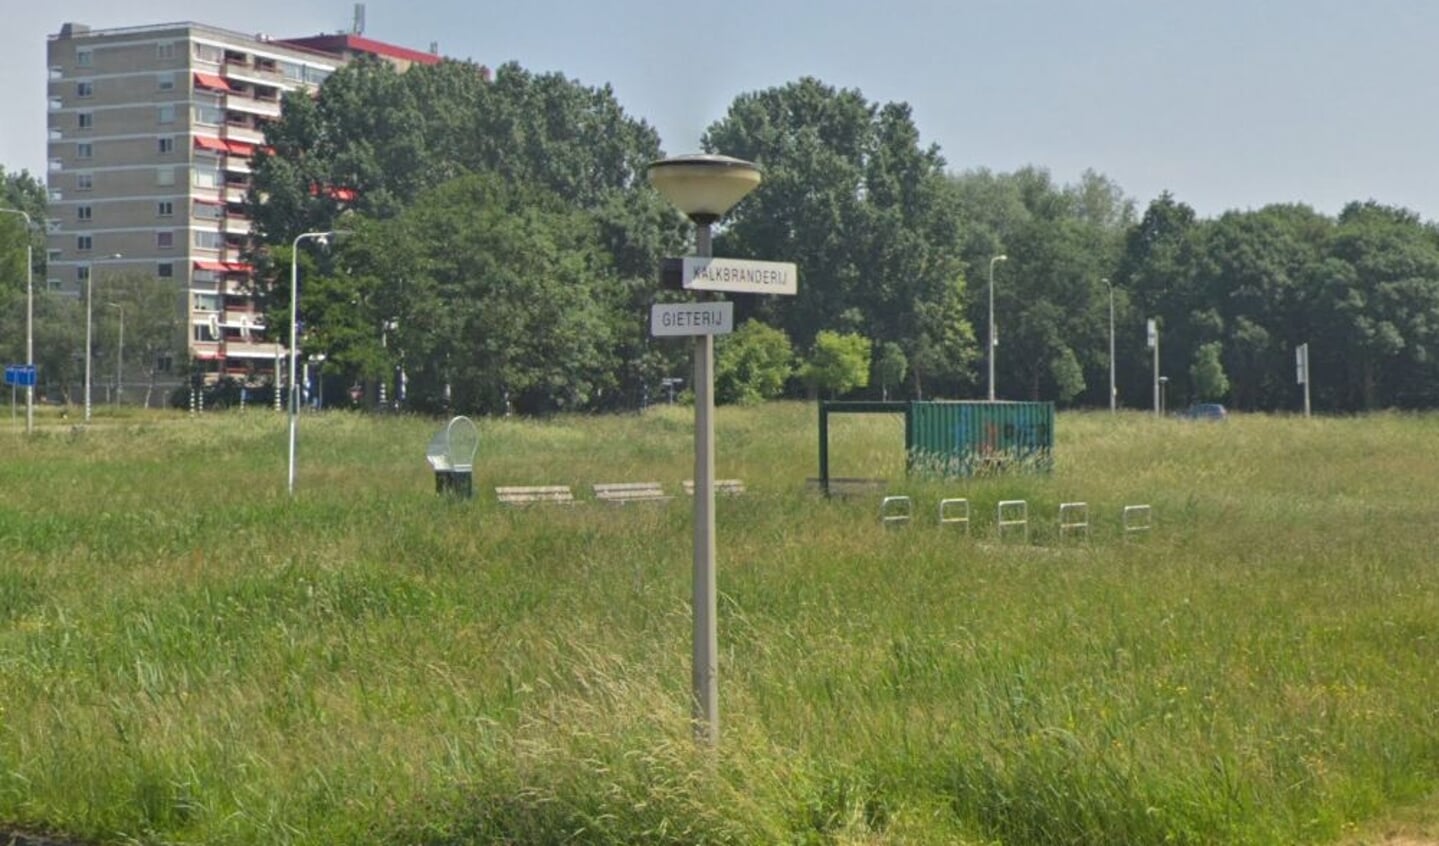 Het open terrein Kalkbranderij-Bovenkerkerhoek.